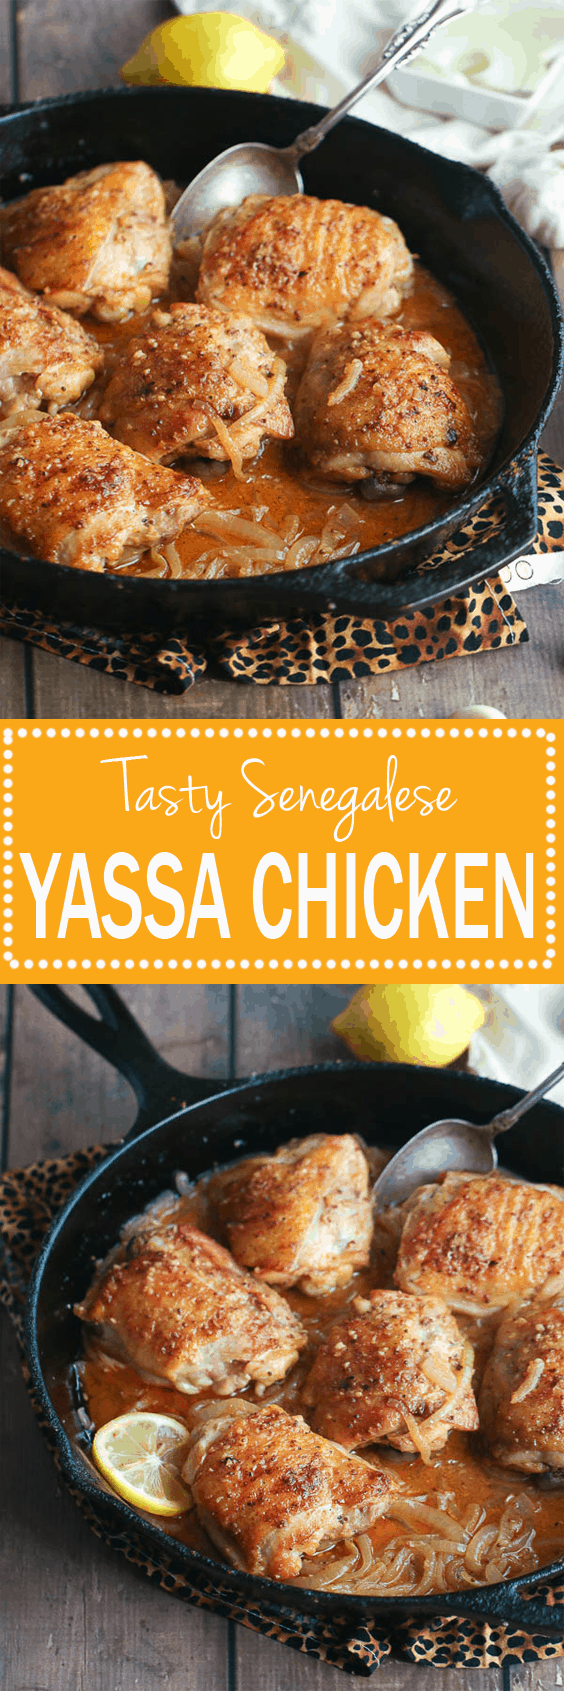 Yassa Chicken